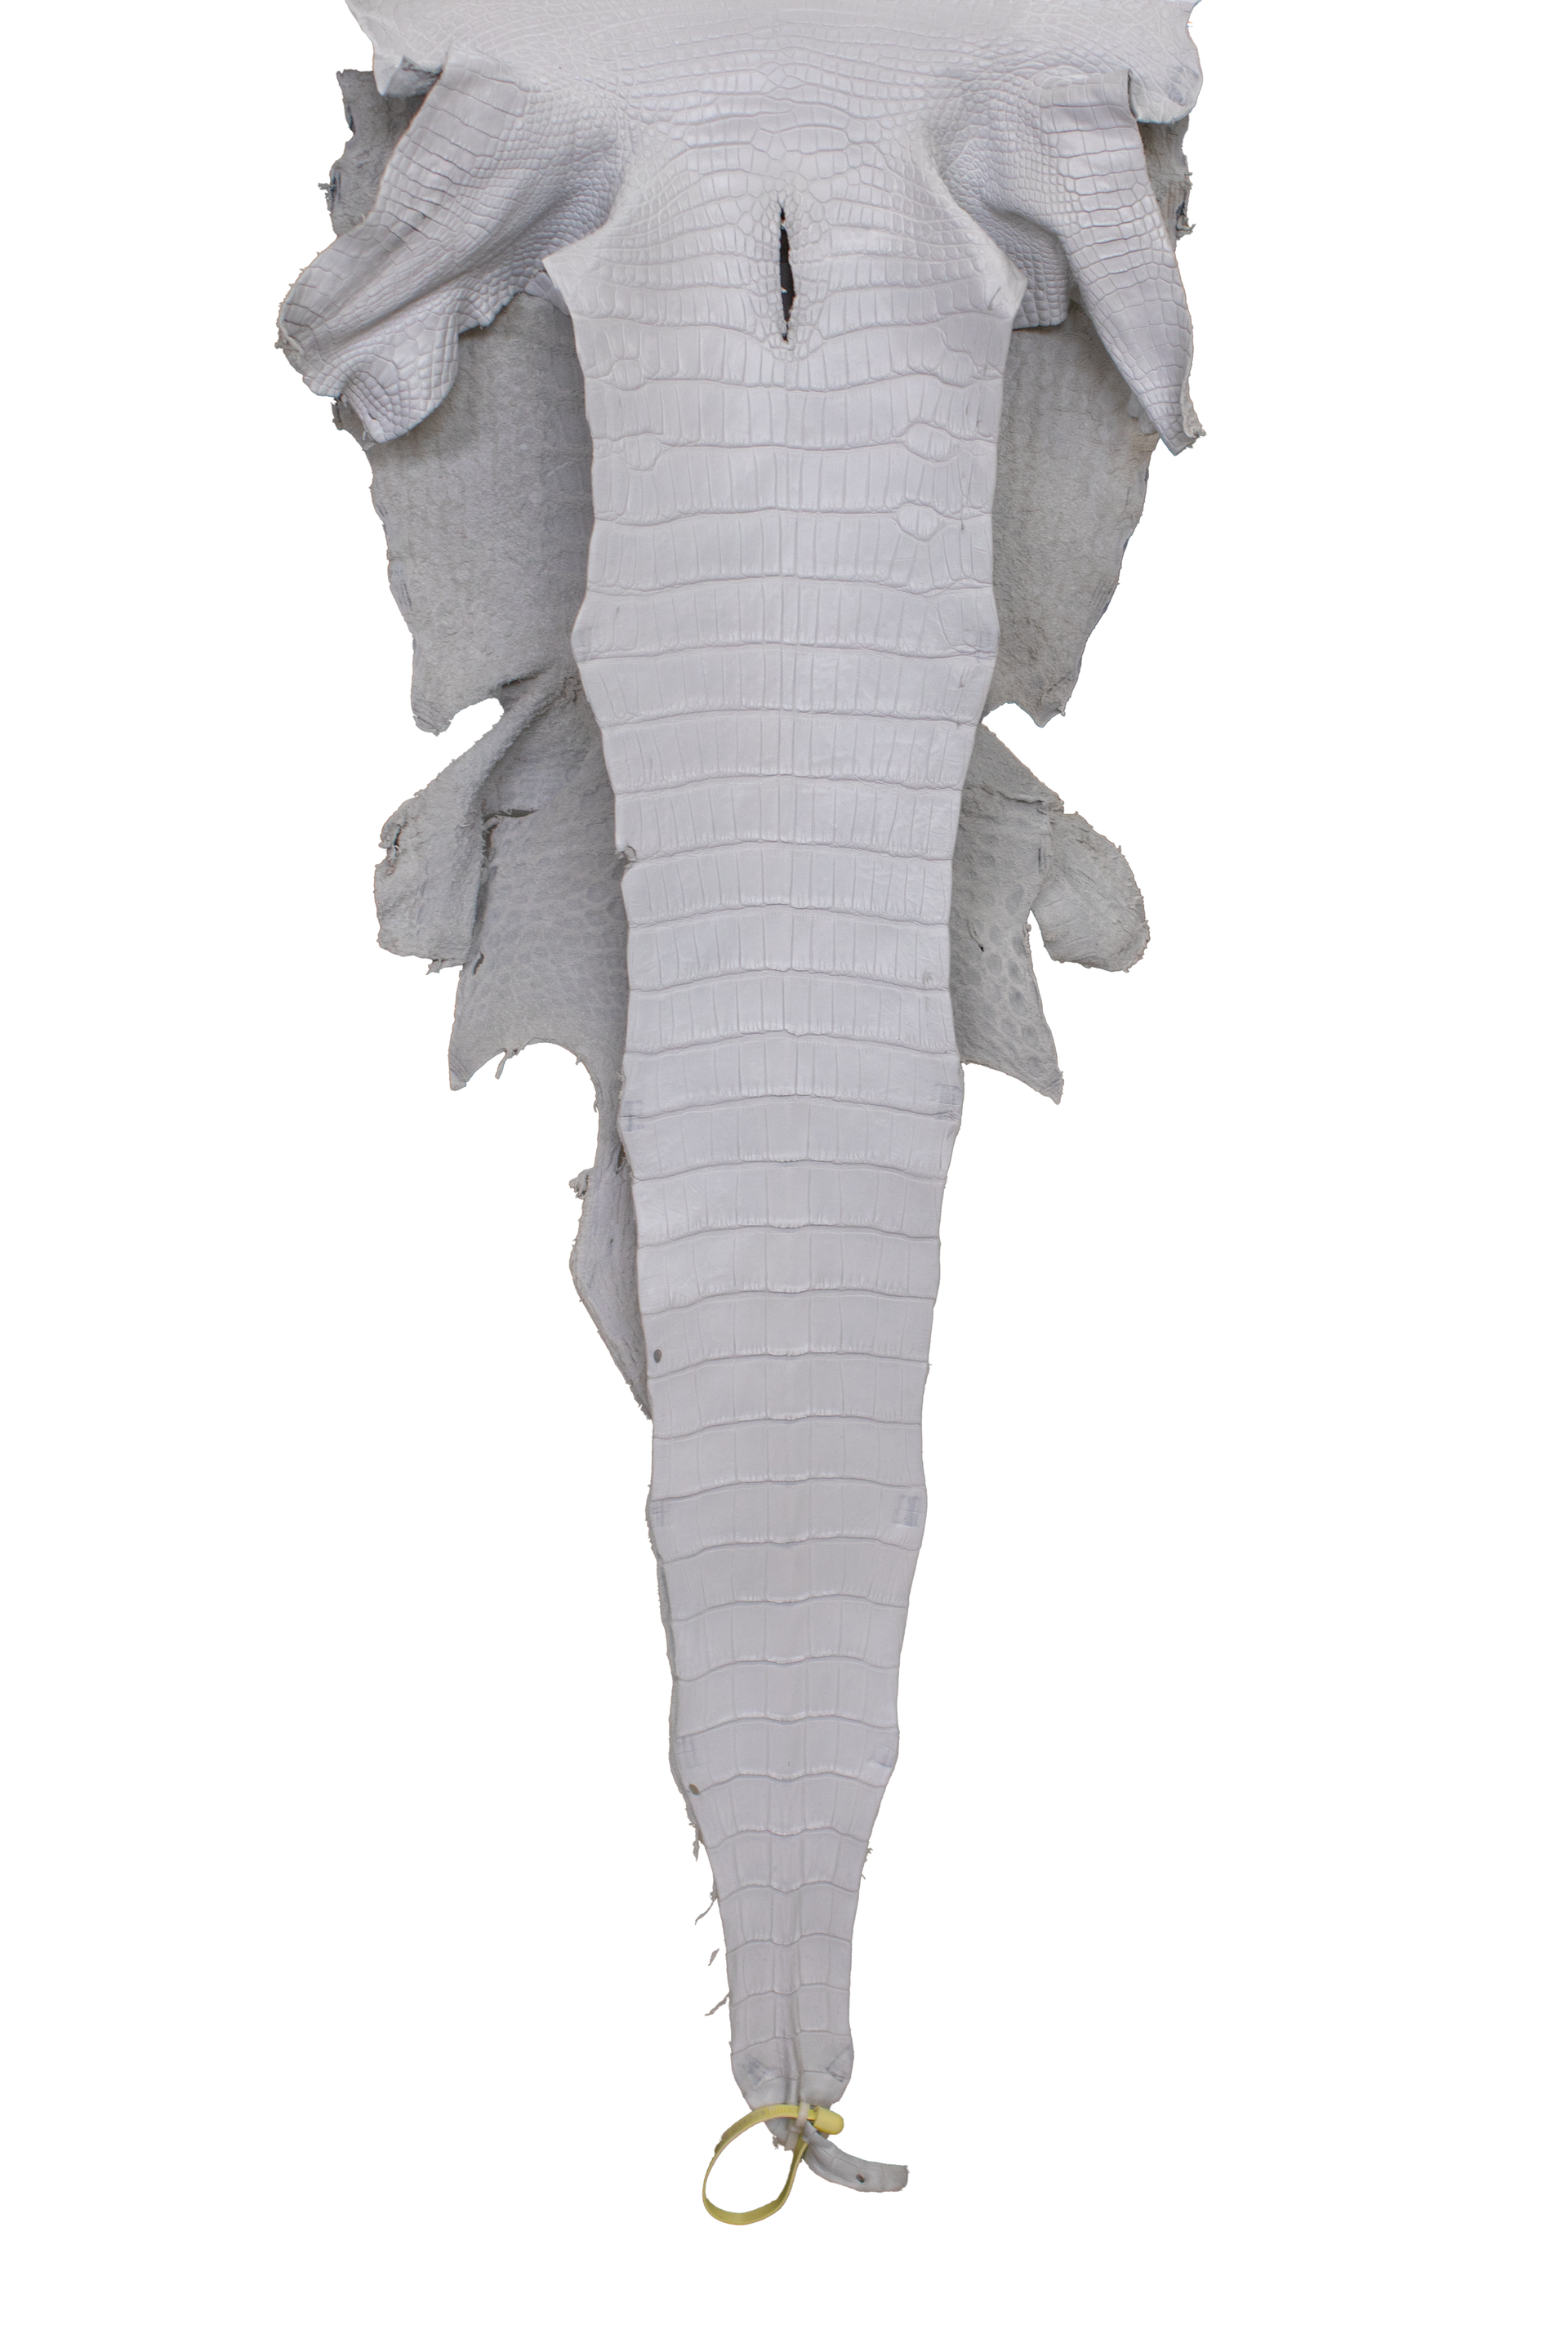 38 cm Grade 3/4 White Matte Wild American Alligator Leather - Tag: LA19-0014203